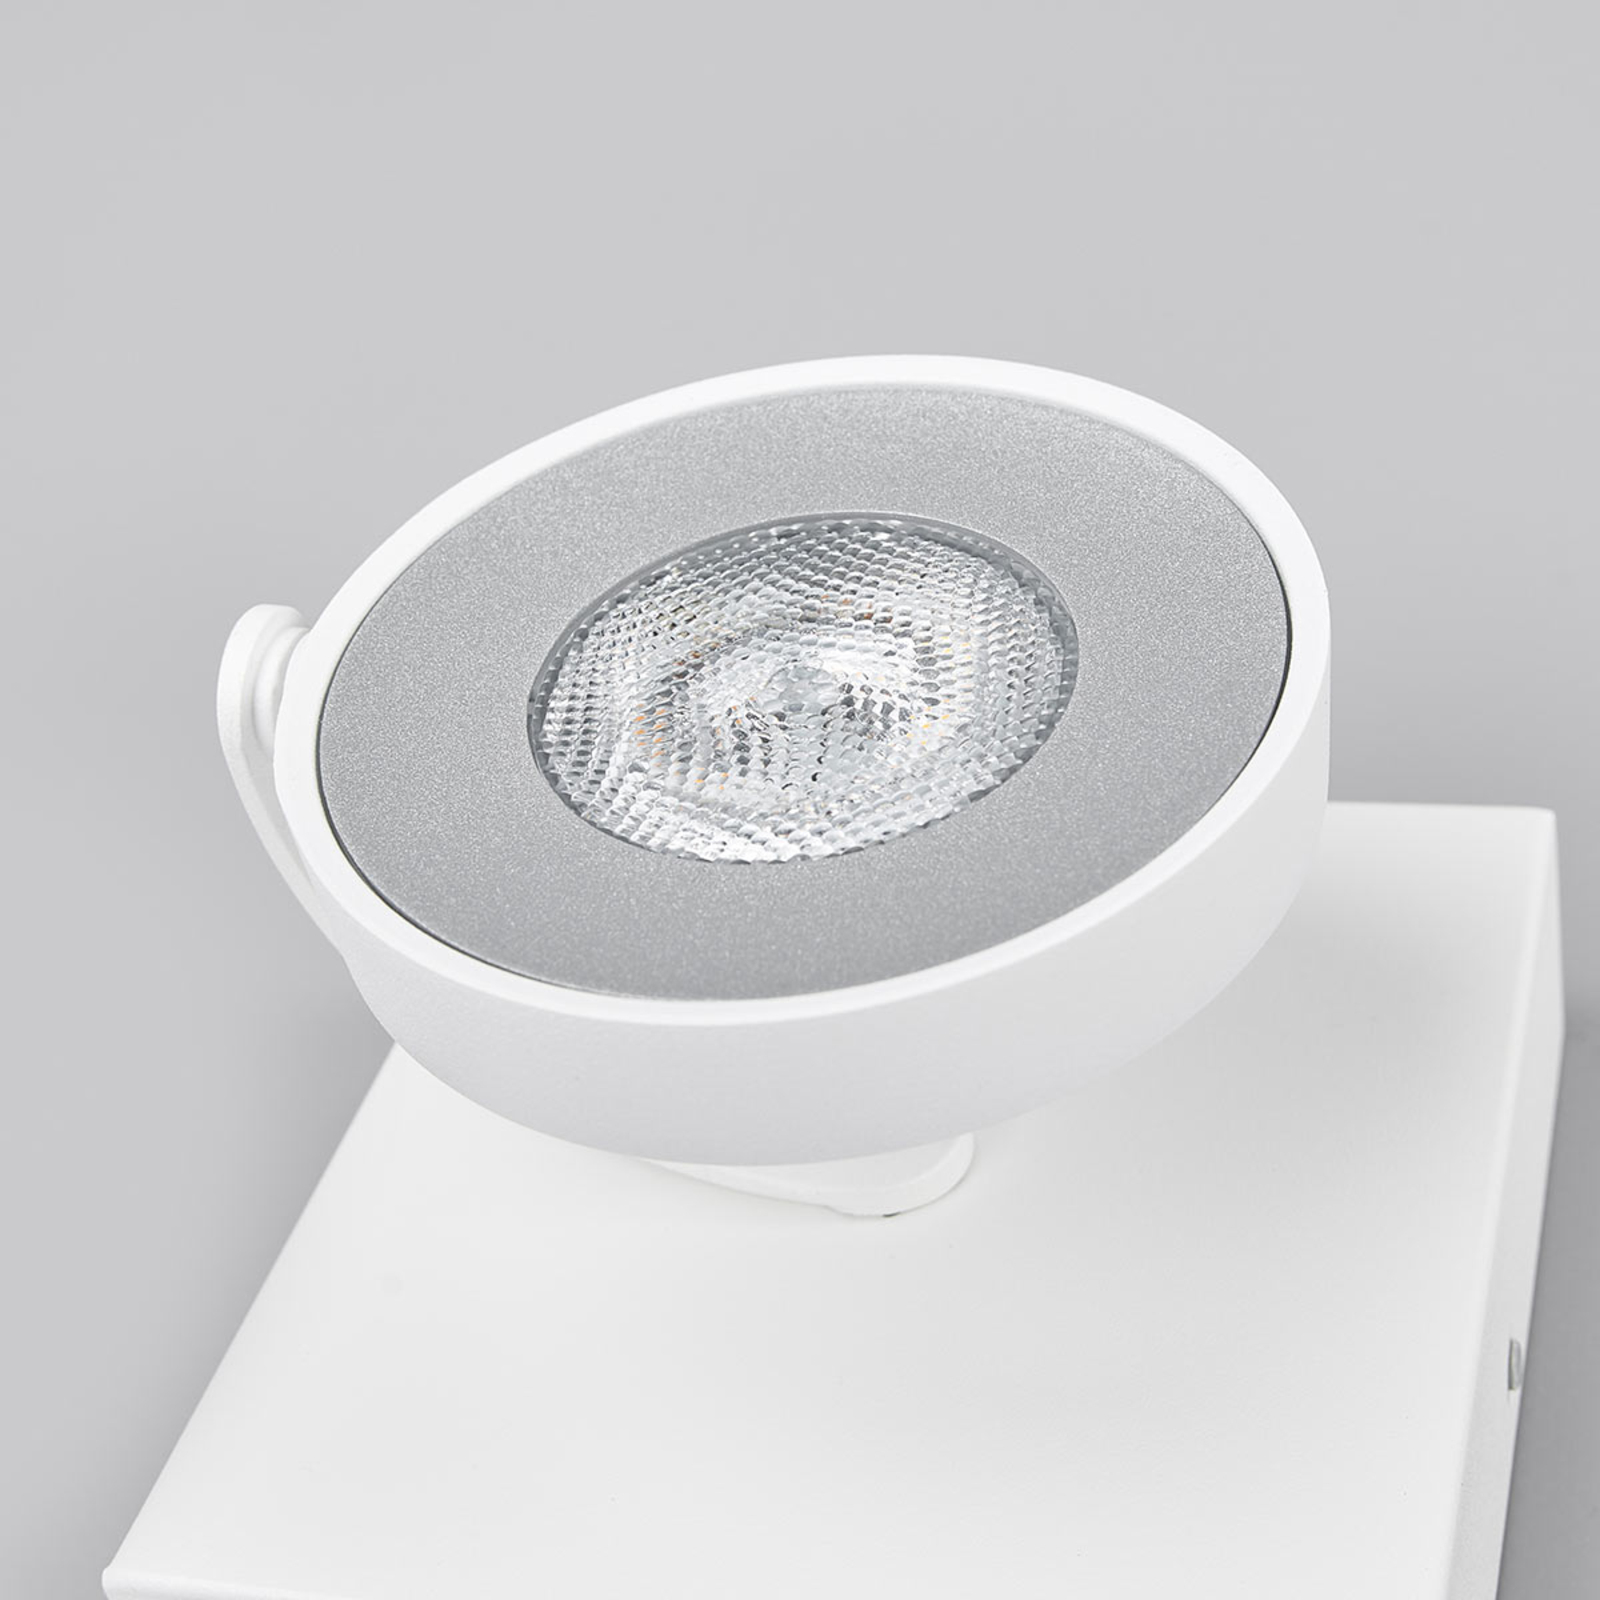 Philips Nástěnný bodový reflektor LED bílý 1-žár.